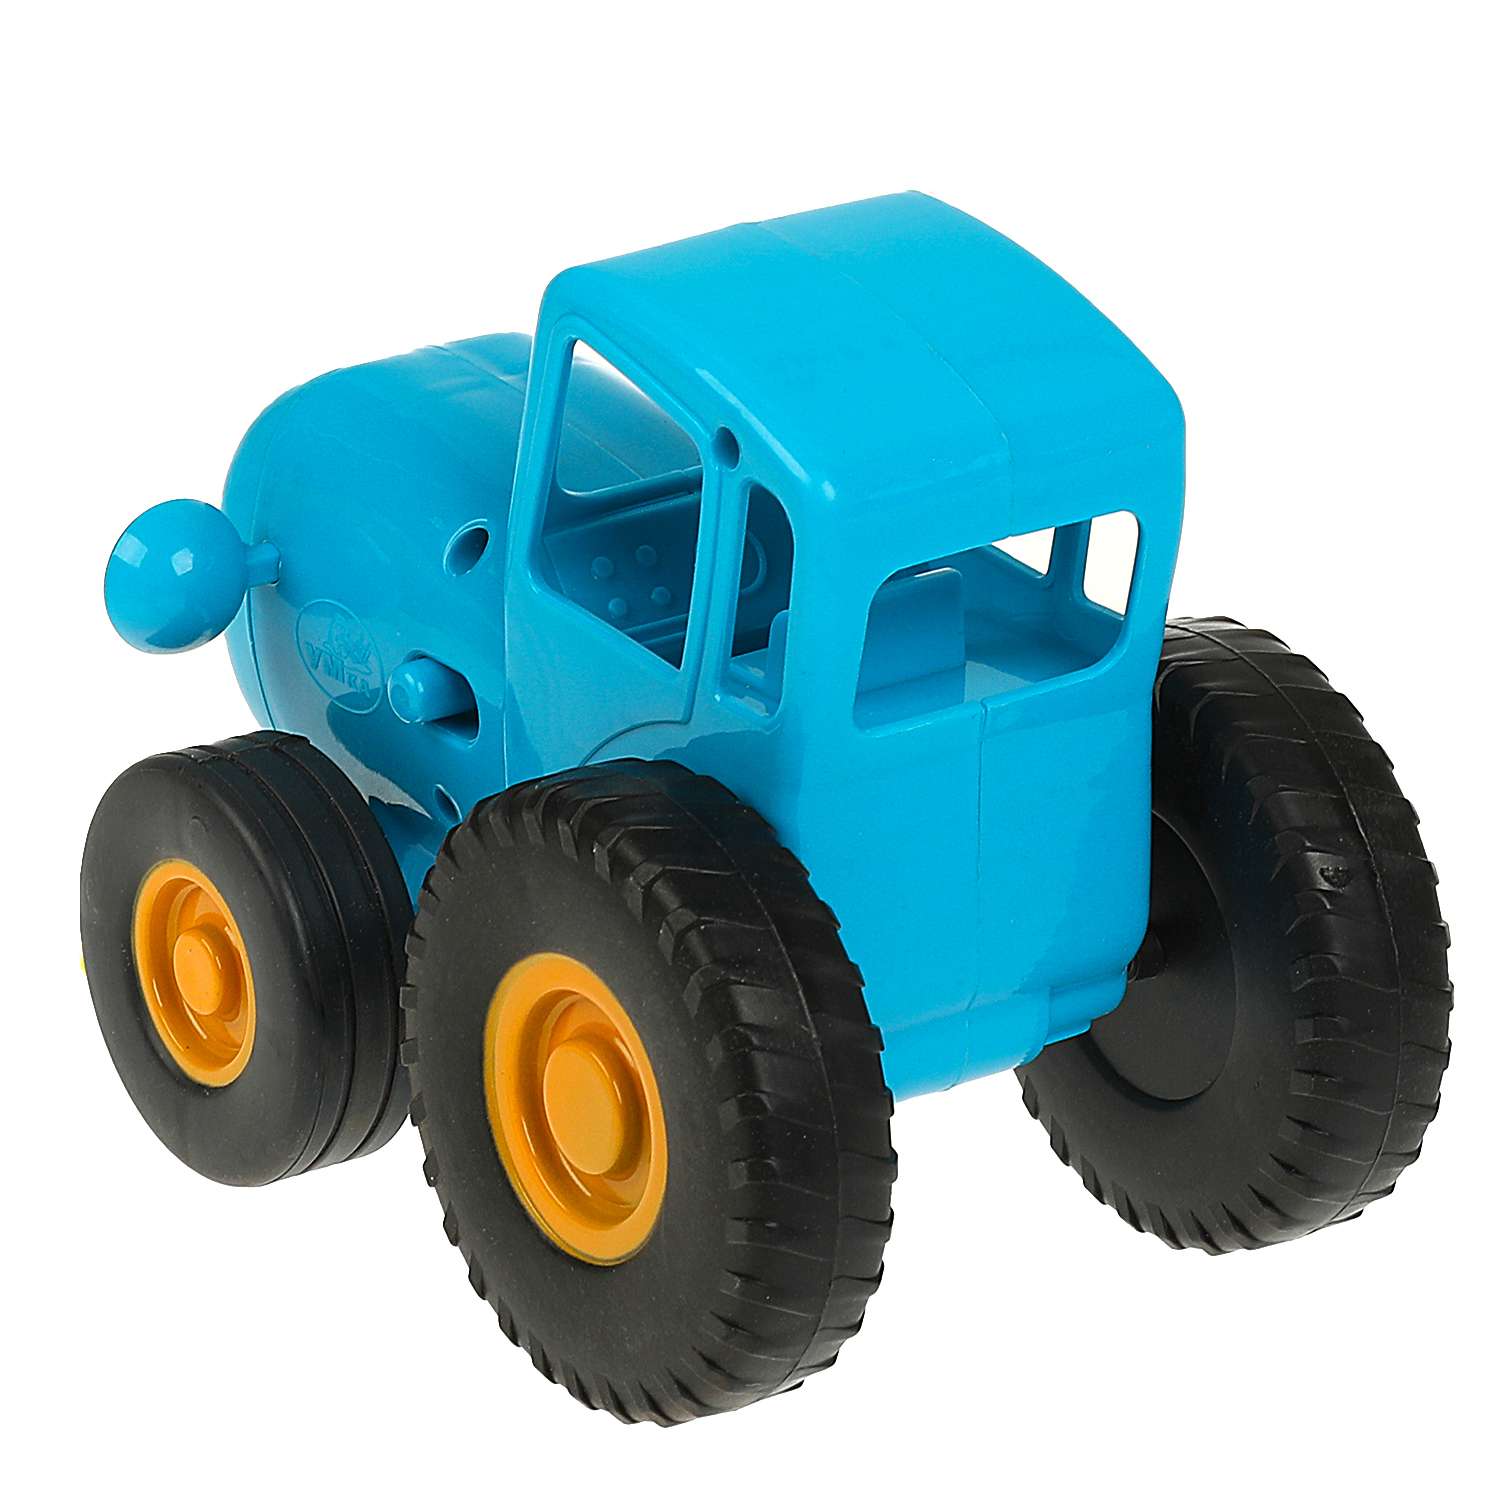 Игрушка Умка Каталка Синий трактор 359111 - фото 3